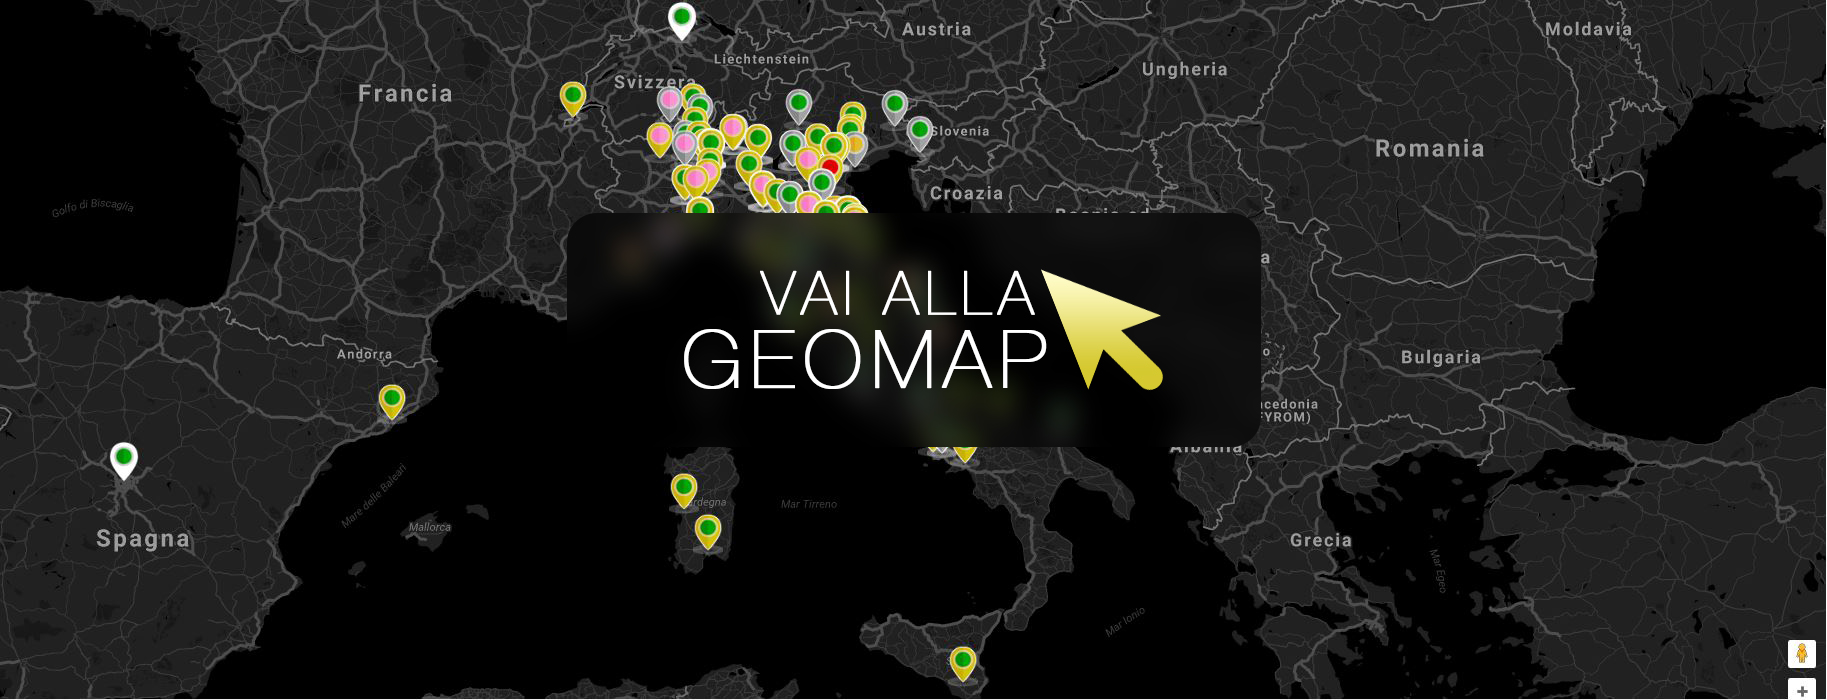 Guarda gli annunci a Vicenza nella mappa intervattiva